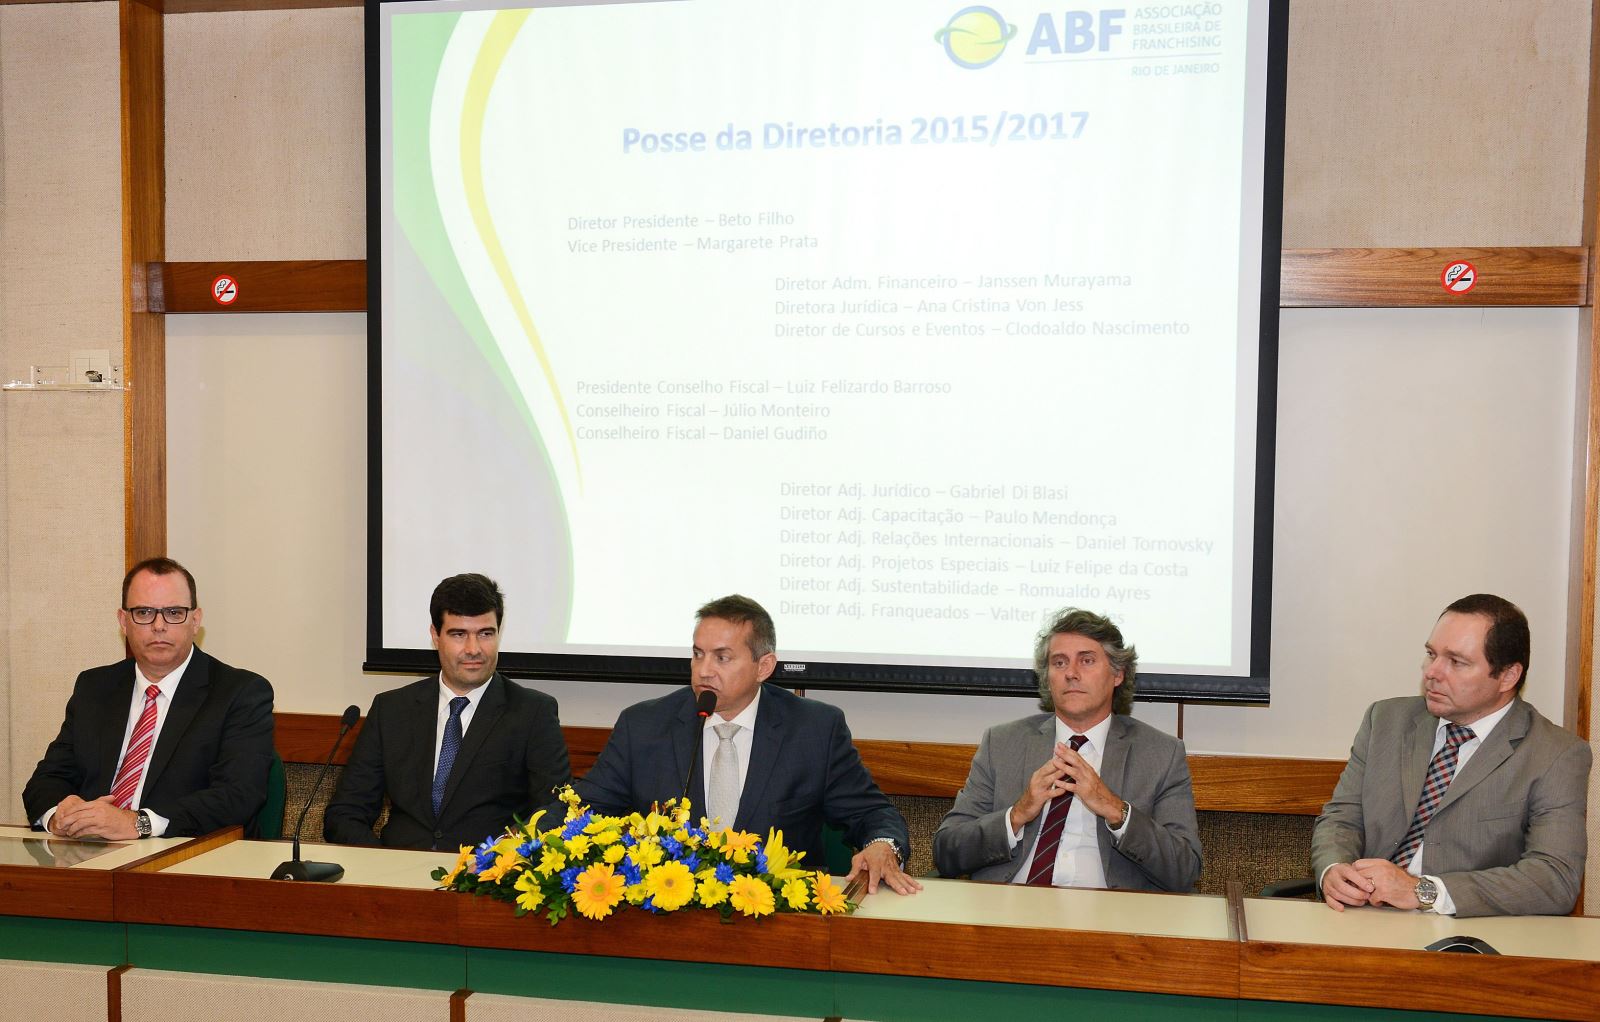 Cerimônia de posse da nova diretoria da ABF Rio reúne setor na noite dessa quinta feira